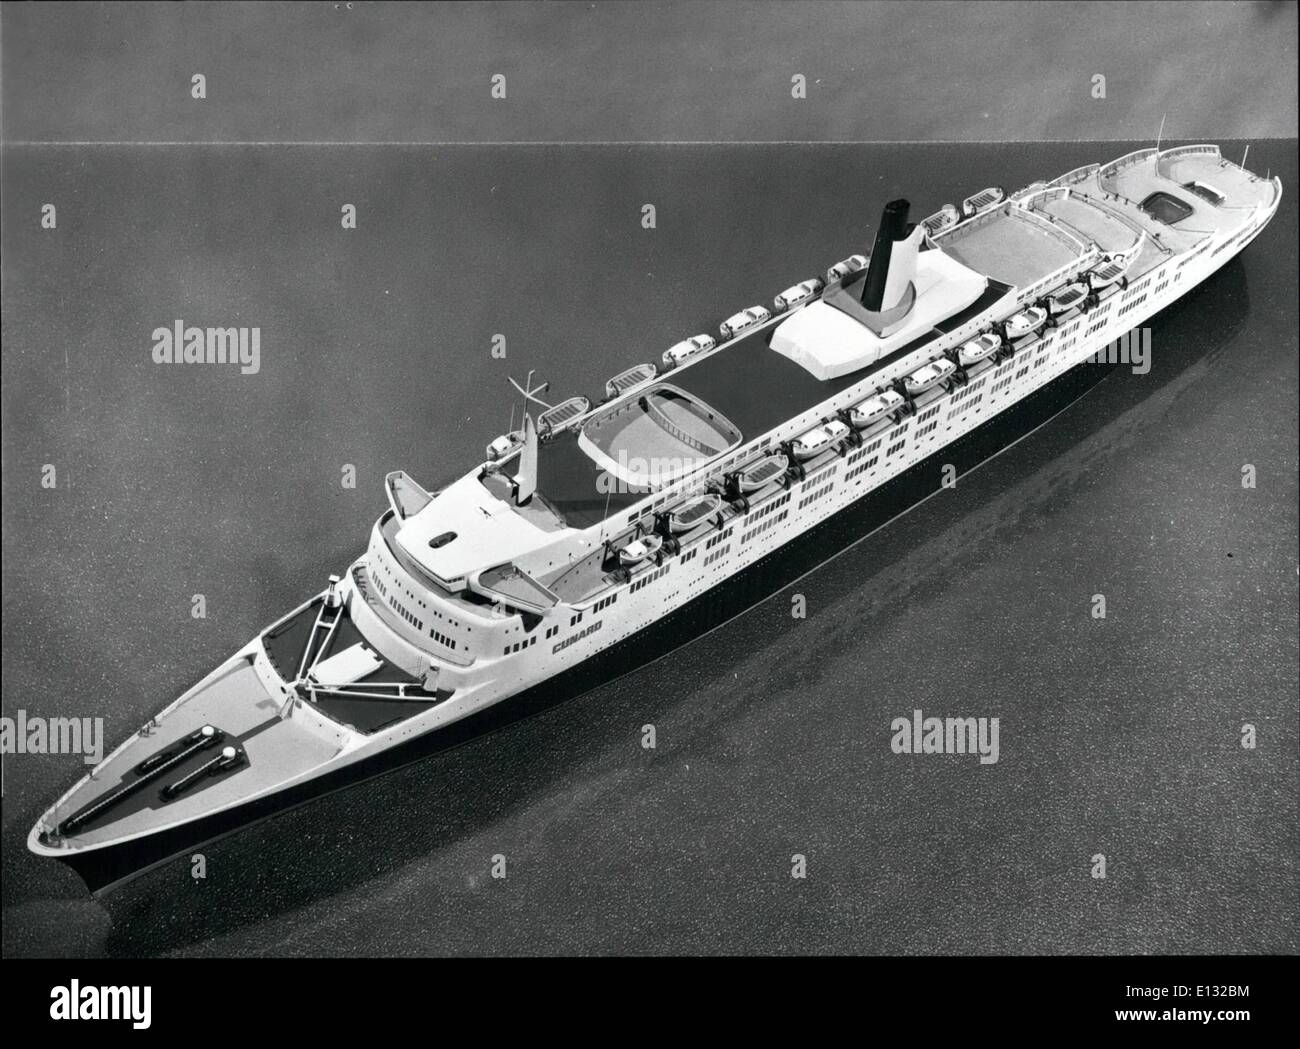 Le 26 février 2012 - L'image montre un modèle de Cunard, nouveau paquebot de 58 000 tonnes. La vie vingt six bateaux : croisière spécialement équipés comme lance. Banque D'Images